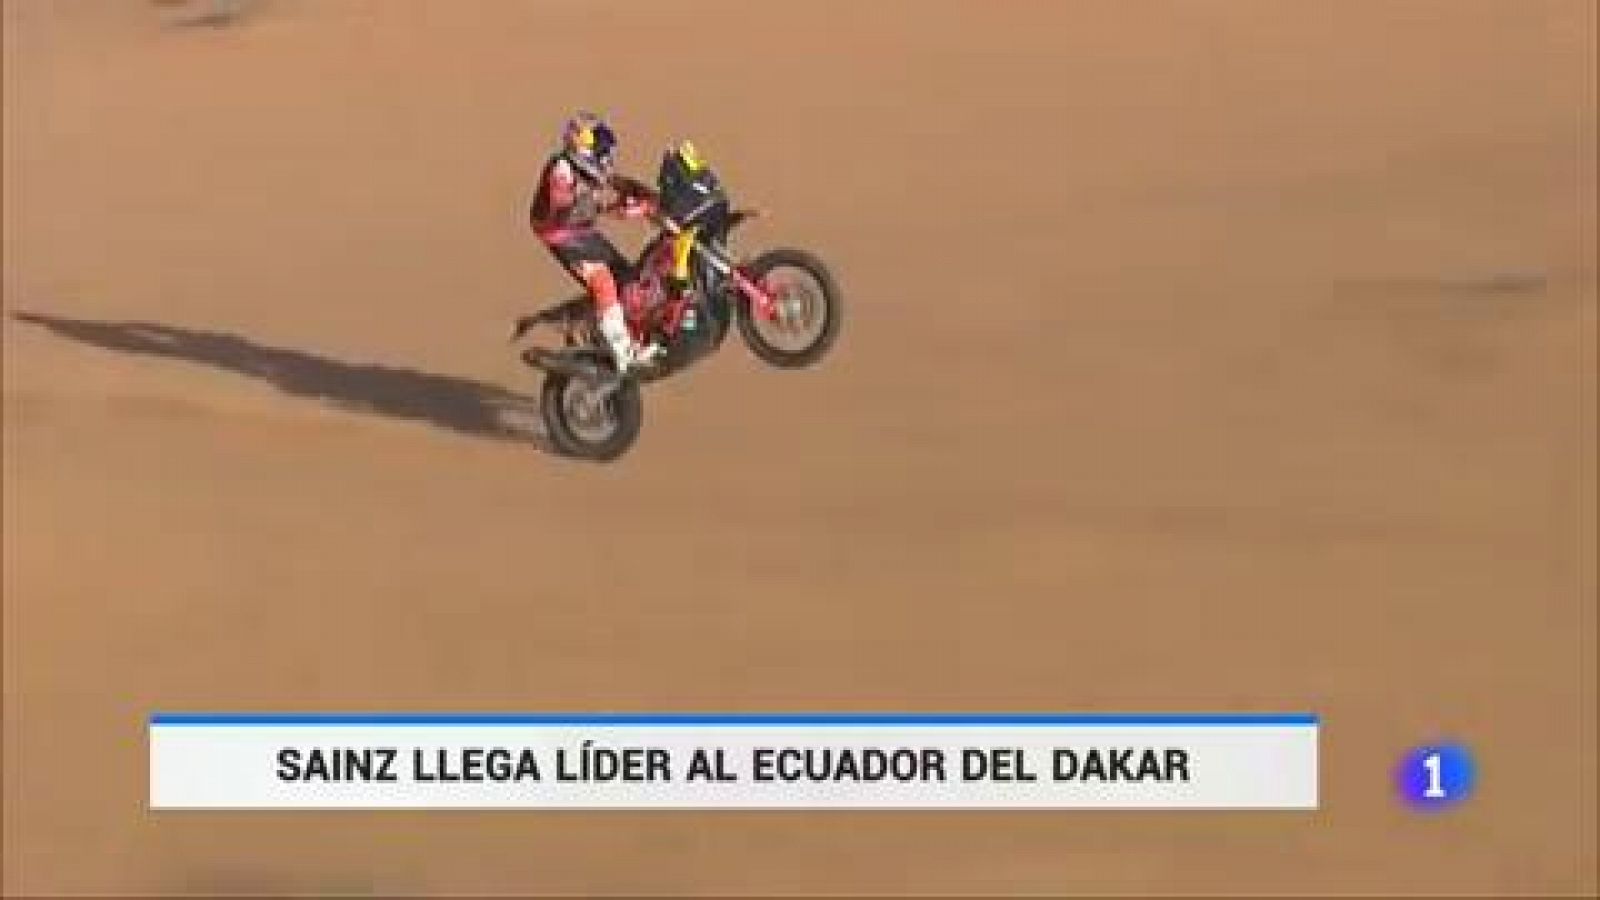 Dakar 2020 - Sainz llega líder al ecuador de la carrera - rtve.es